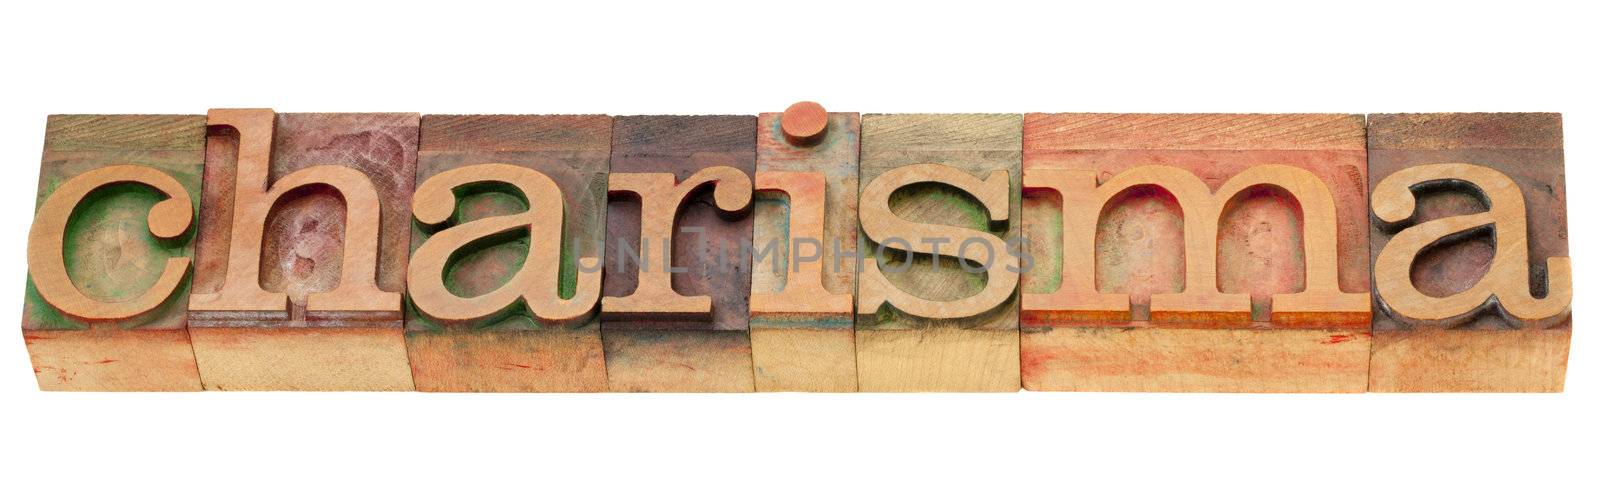 charisma word letterpress type by PixelsAway